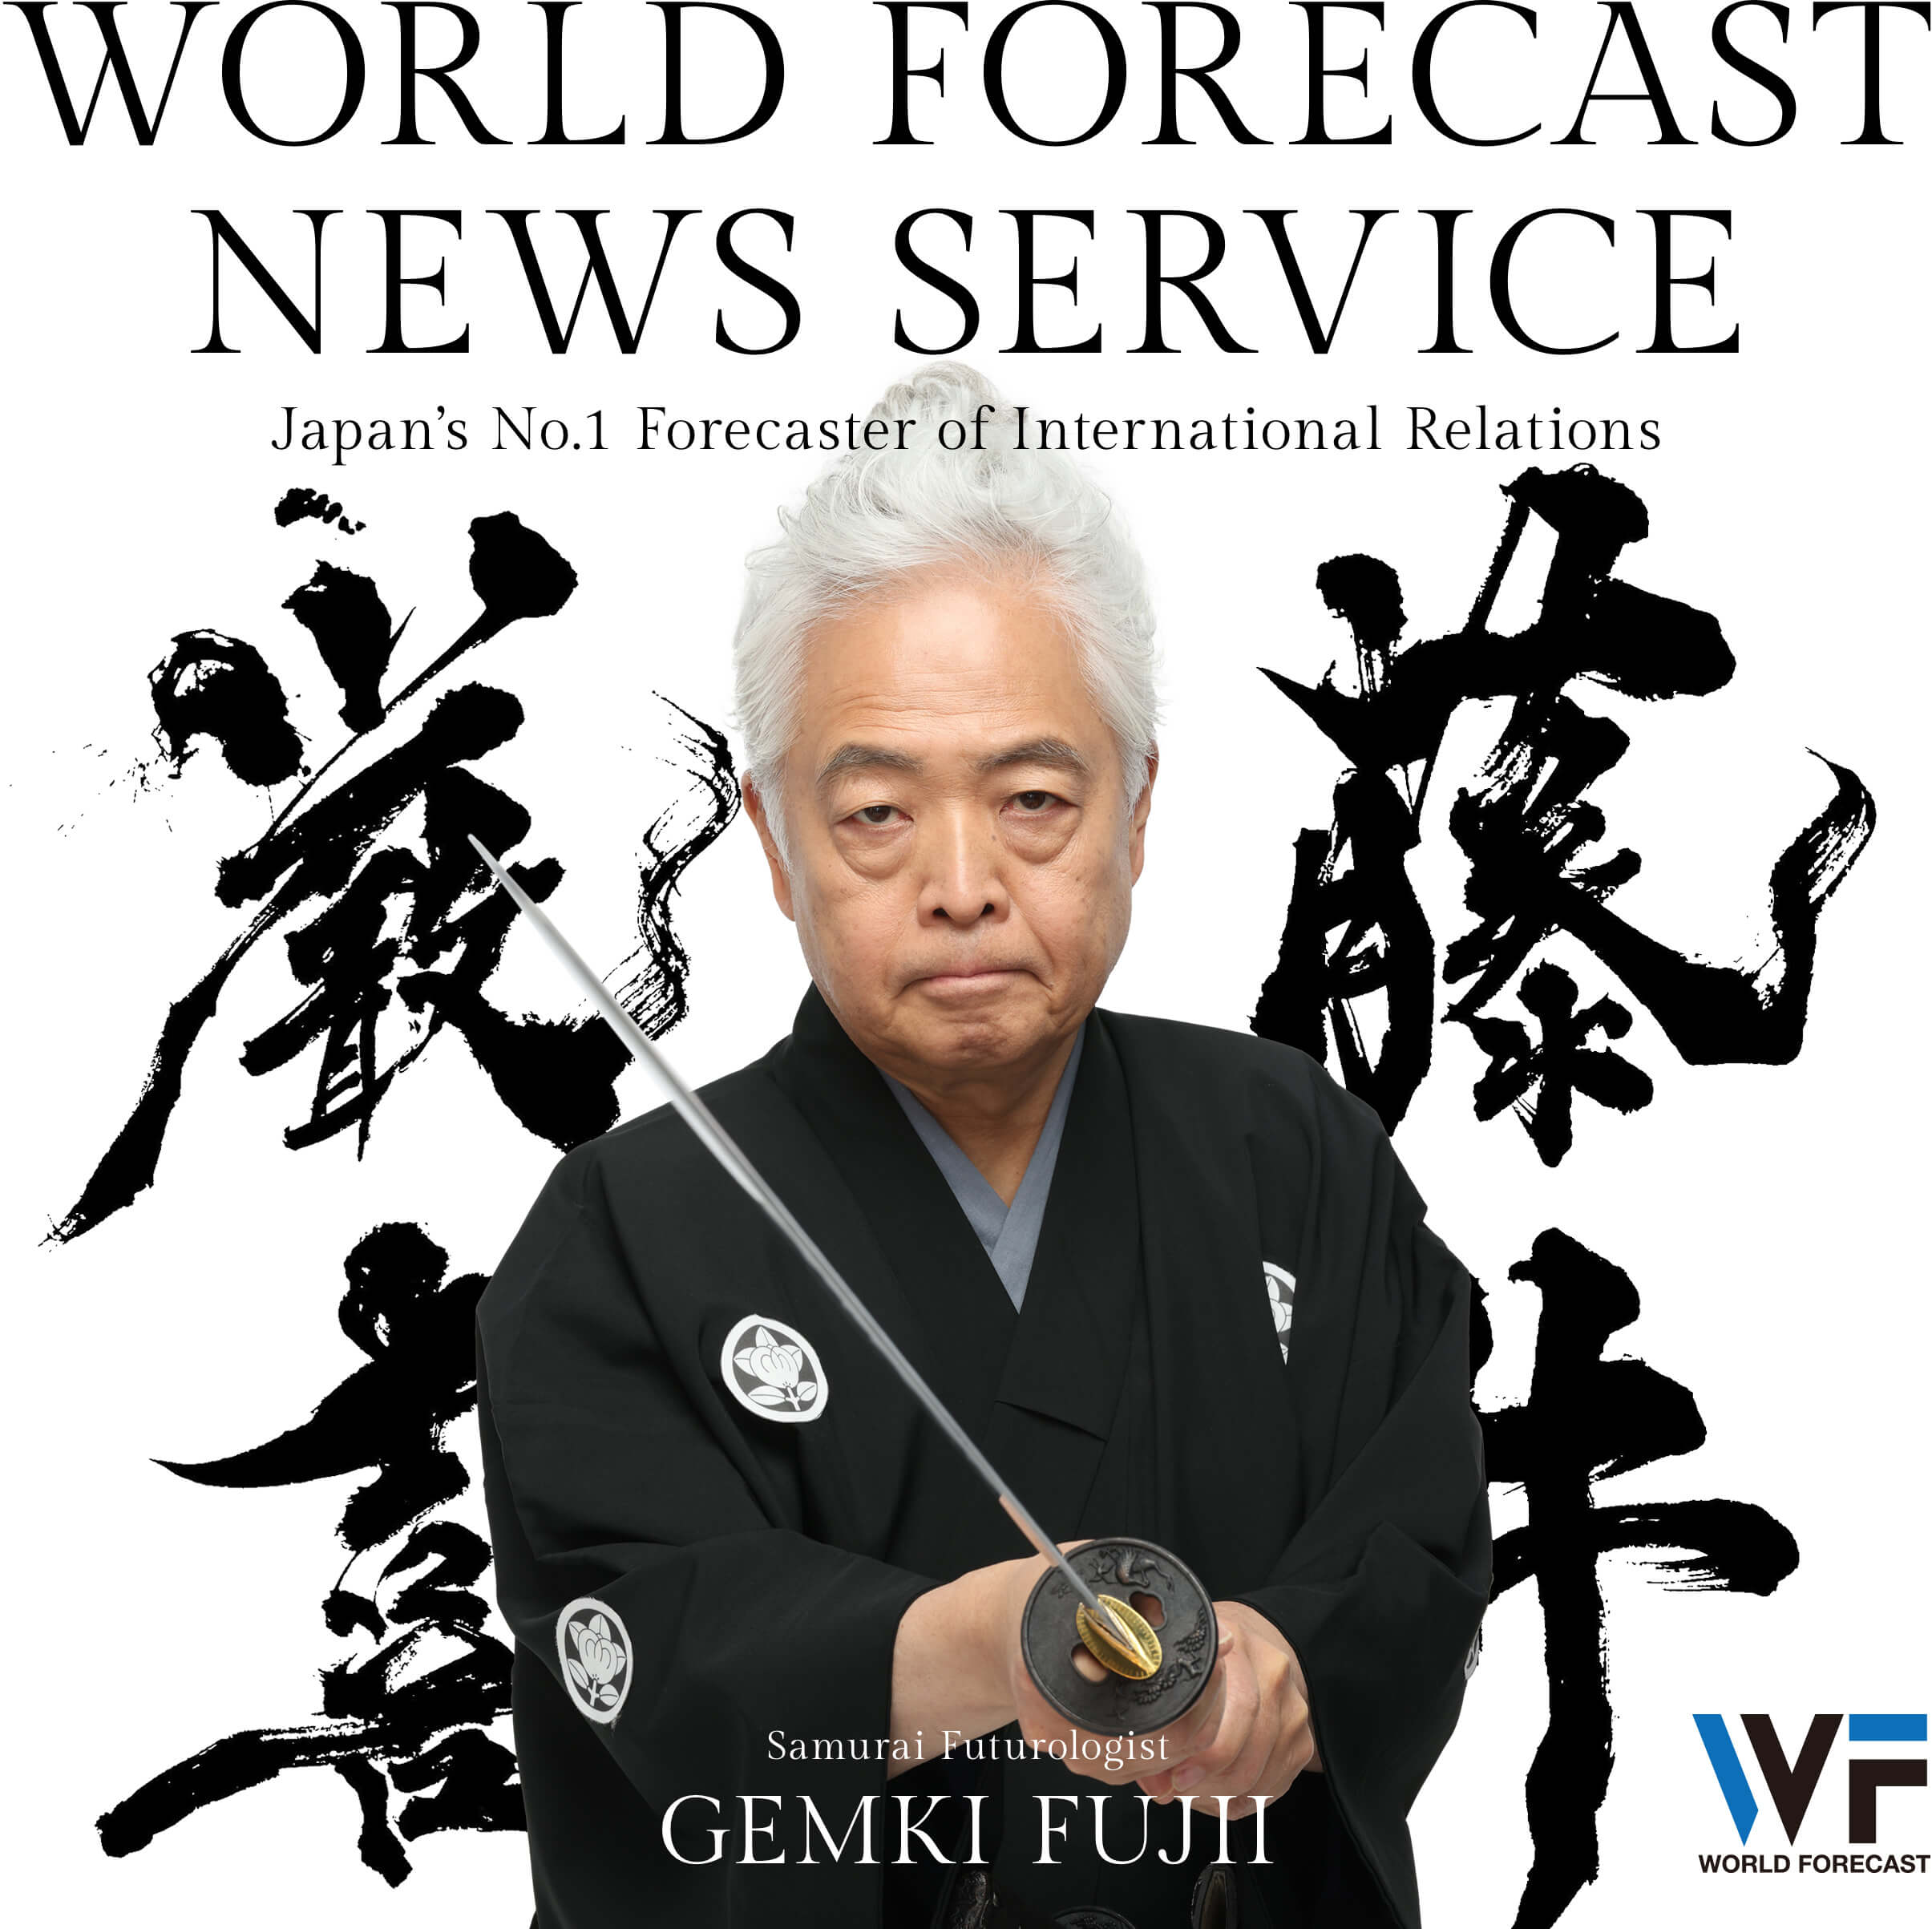 Samurai Futurologist Gemki Fujii WorldForcast.jp